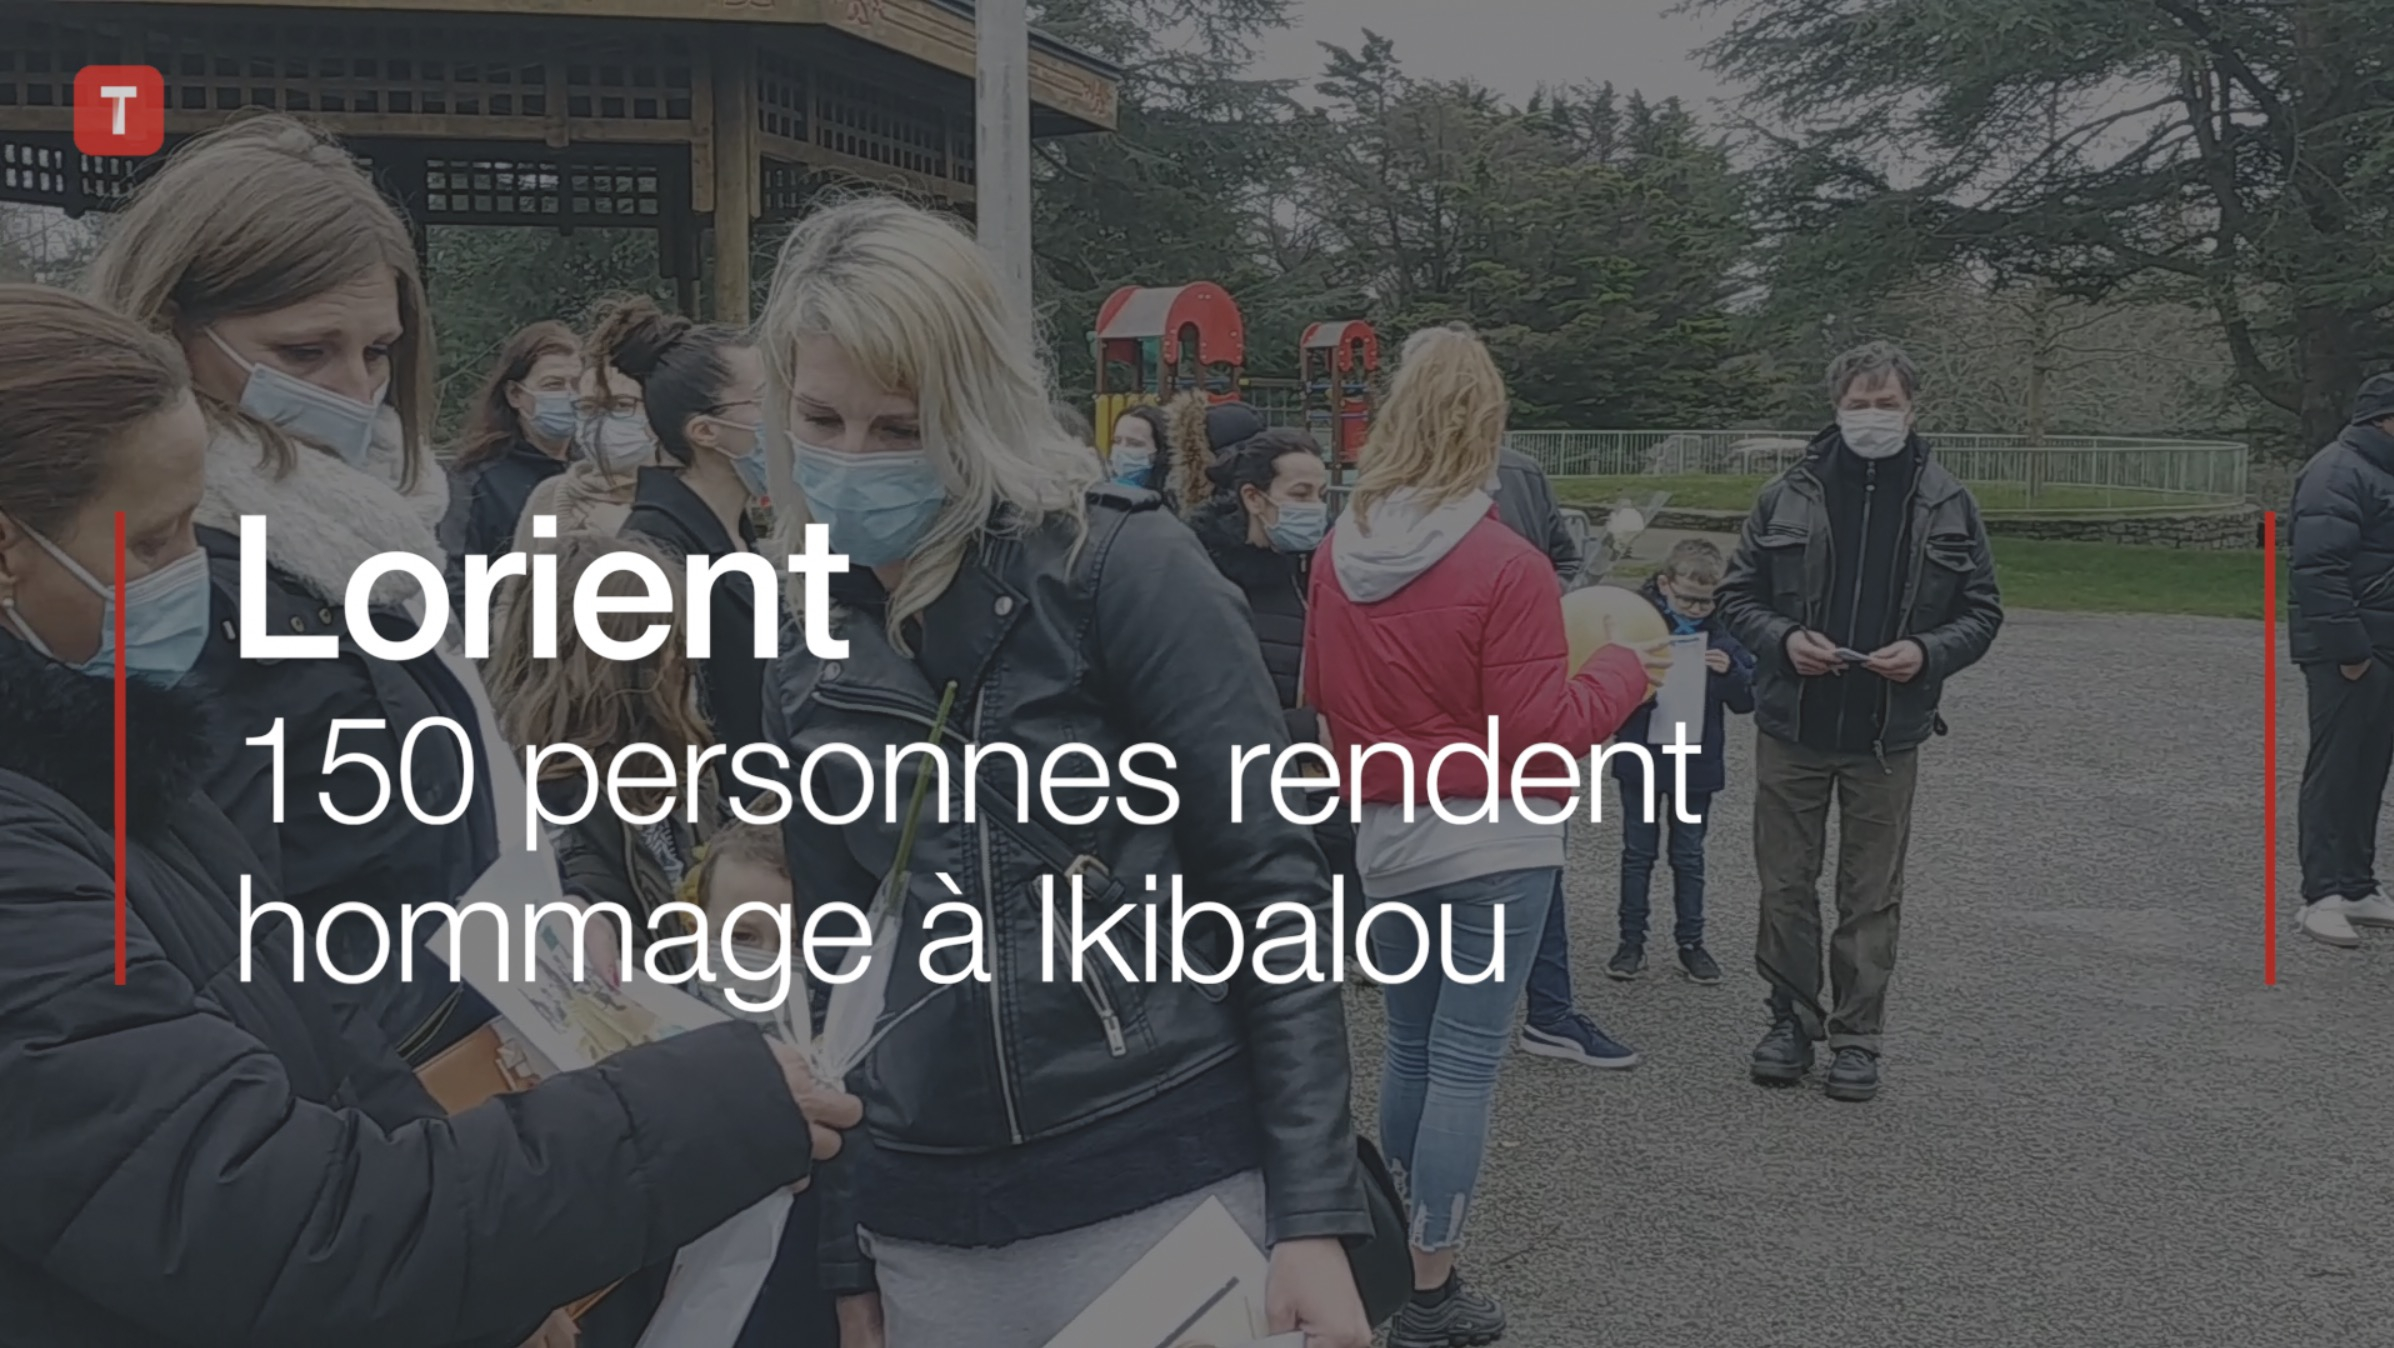 Lorient. 150 personnes rendent hommage à Ikibalou (Le Télégramme)